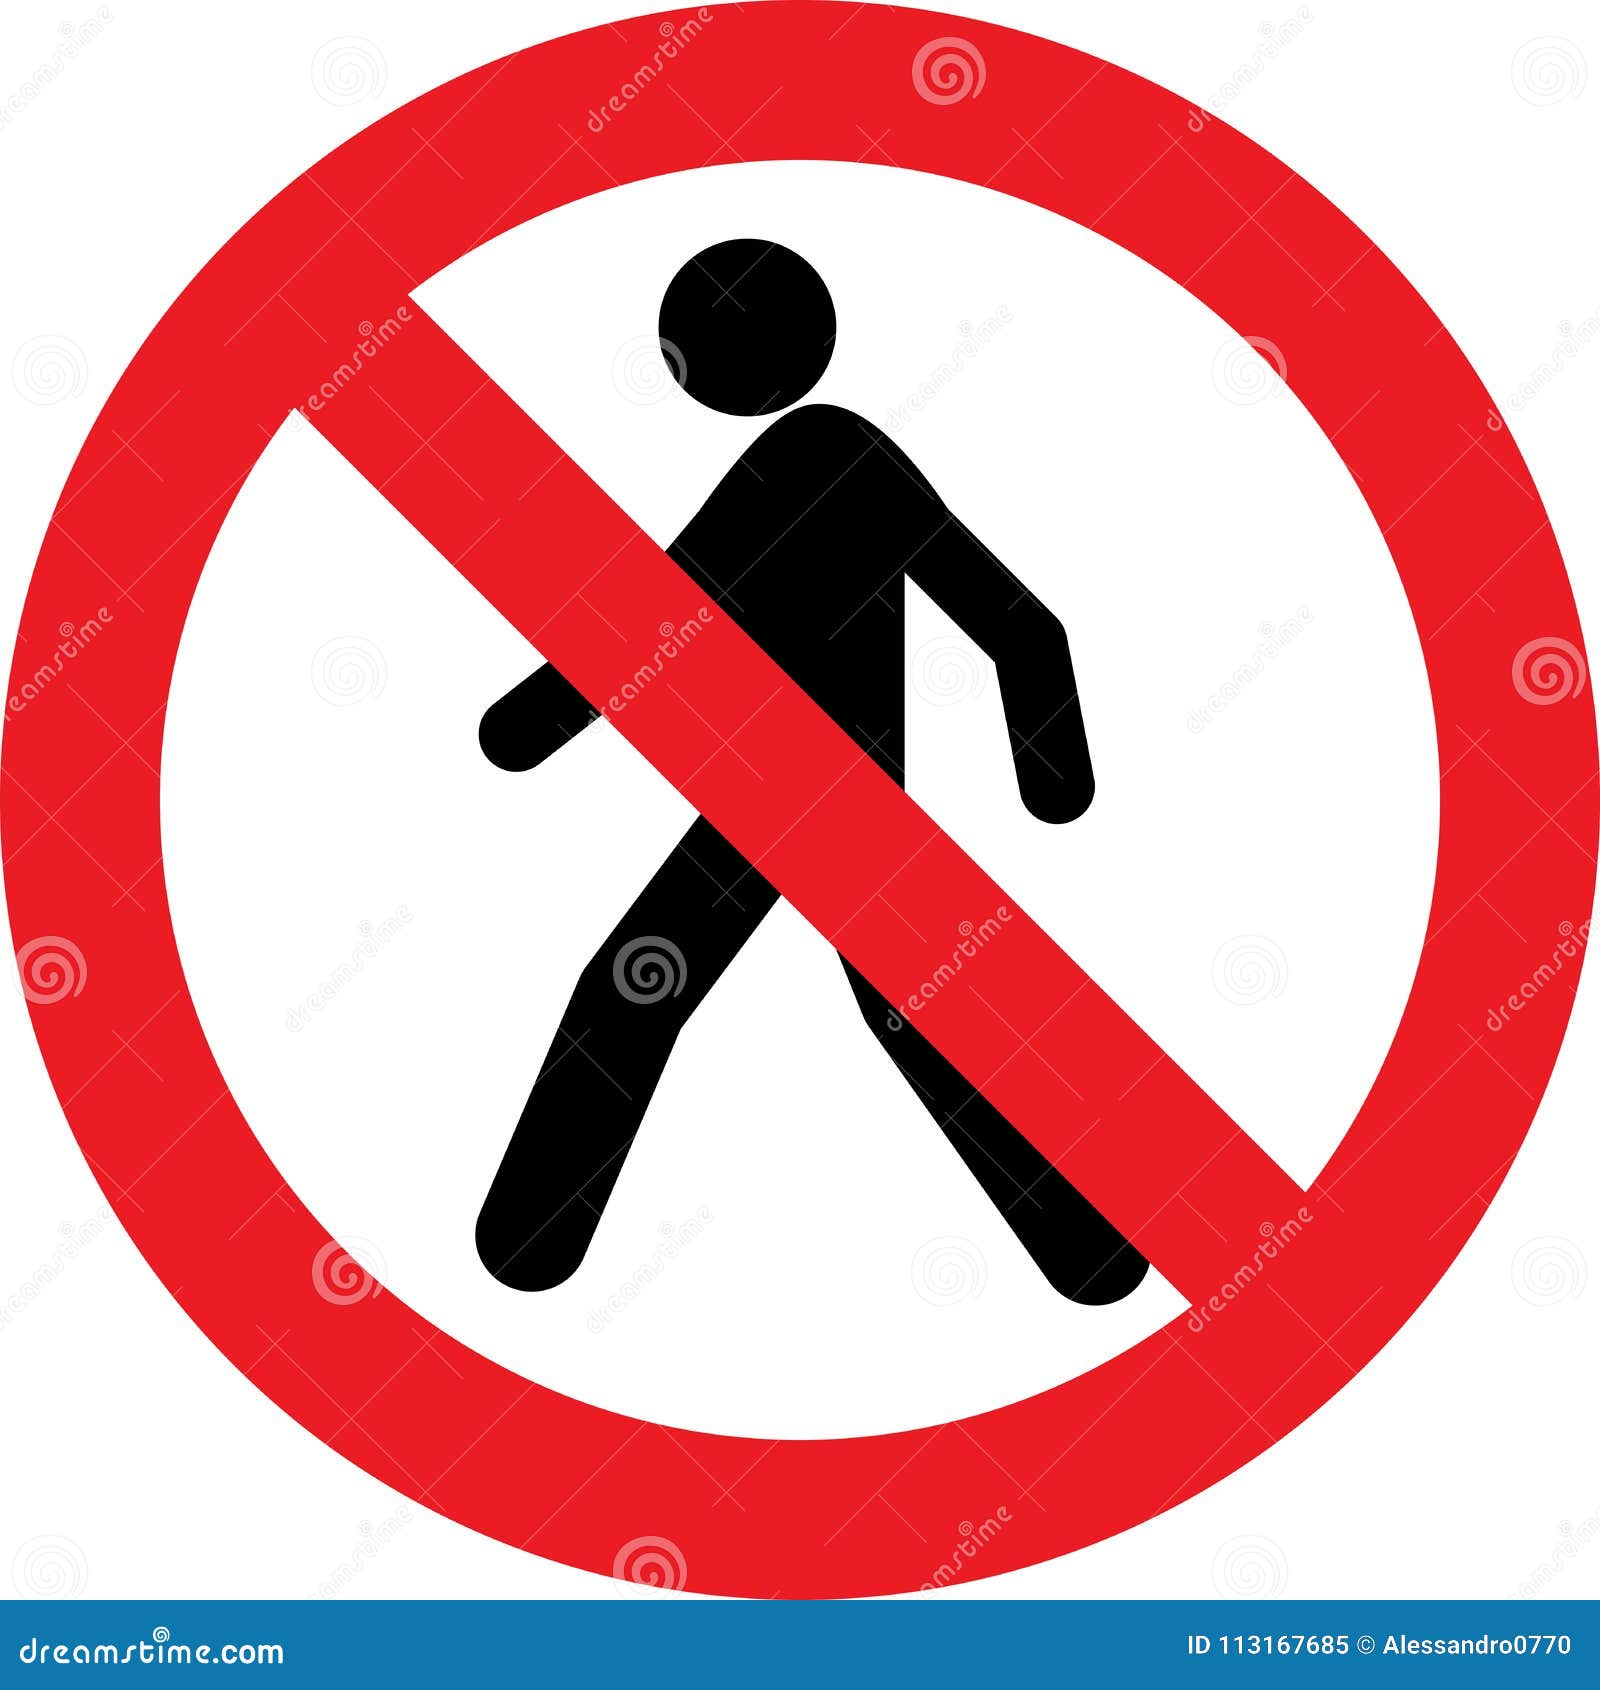 no pedestrian sign